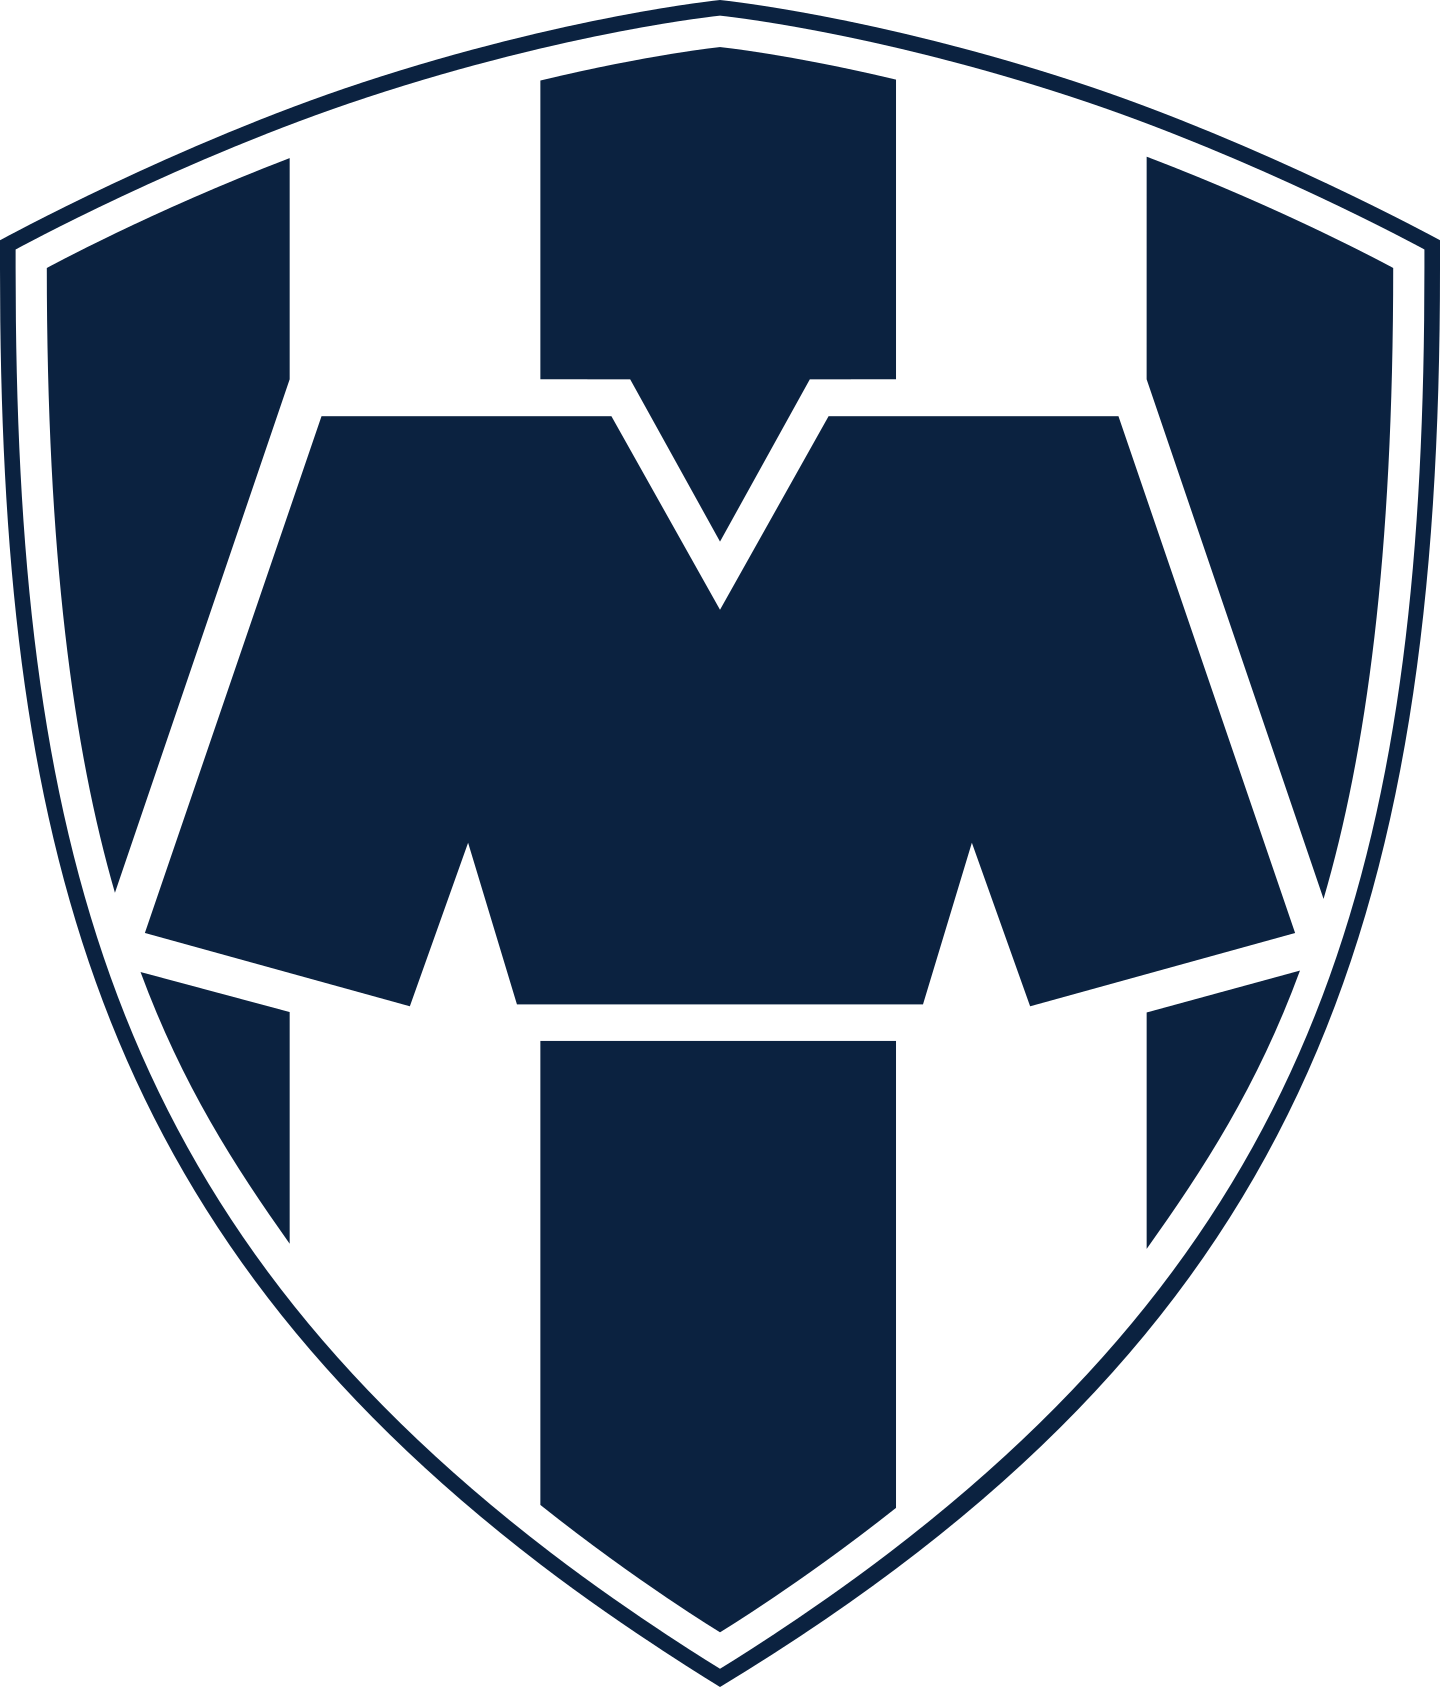 rayados monterrey logo 2 - Rayados Monterrey Logo